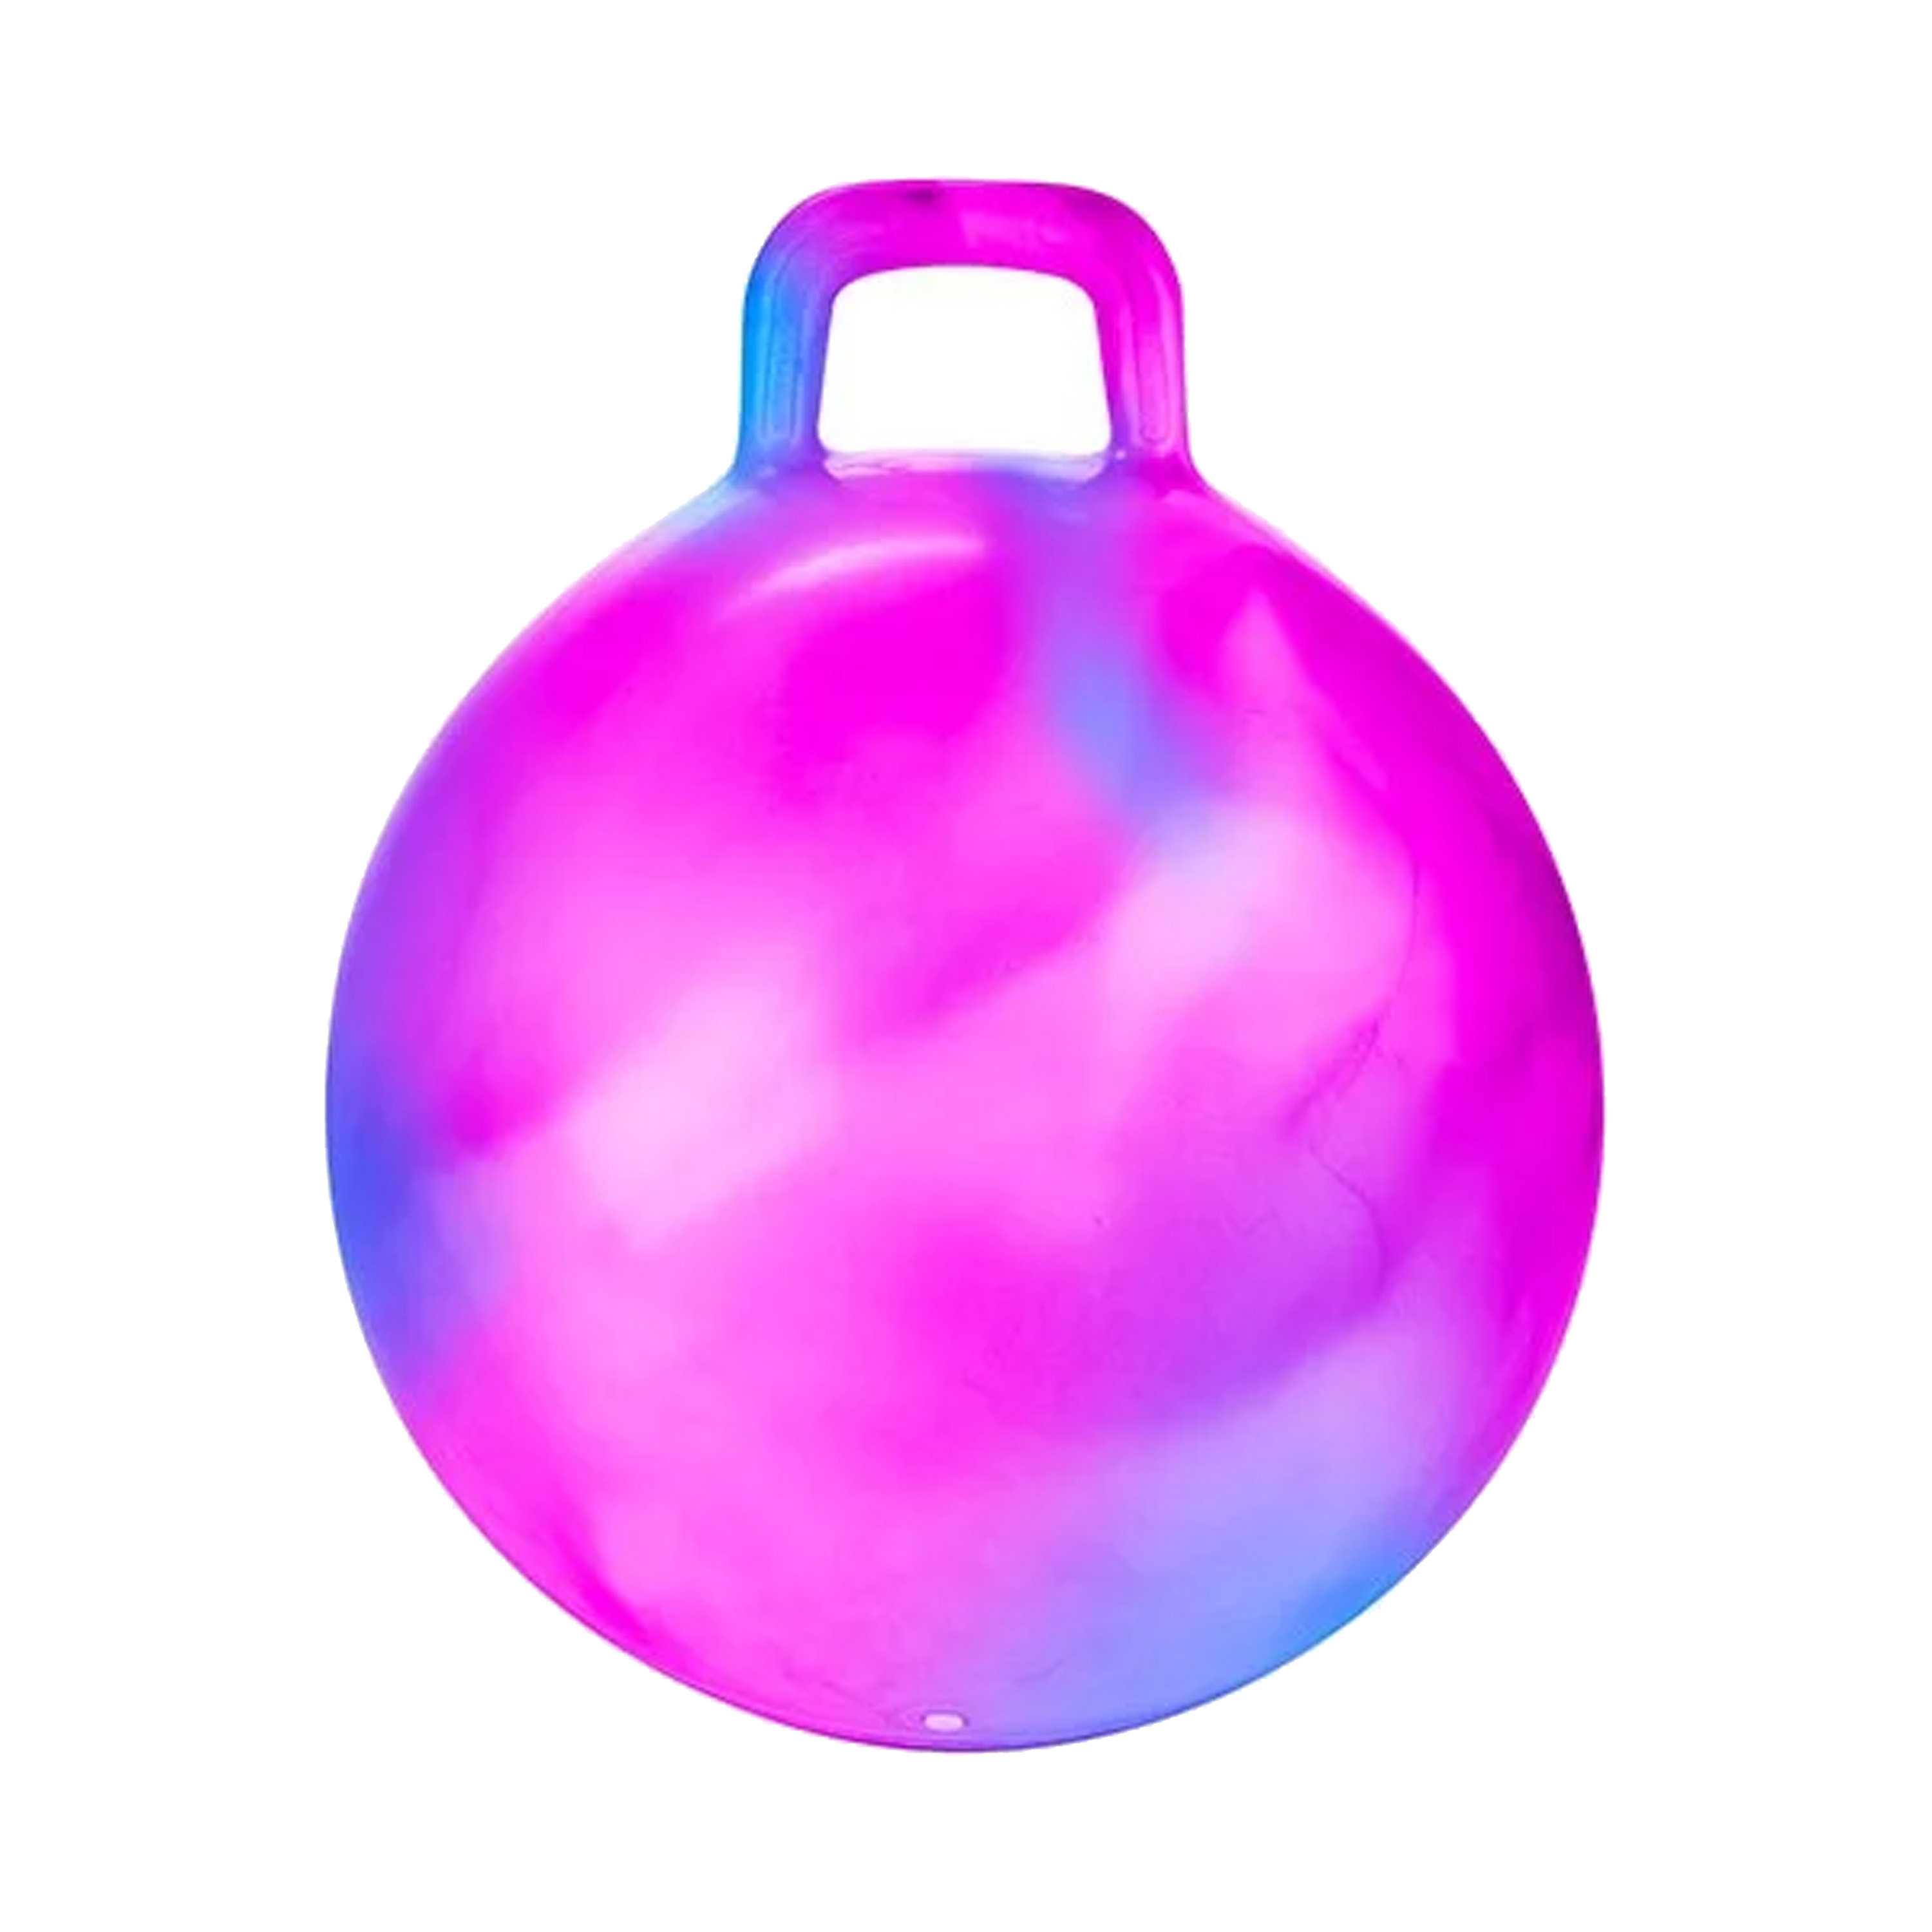 Skippybal marble - roze/blauw - D45 cm - buitenspeelgoed voor kinderen -